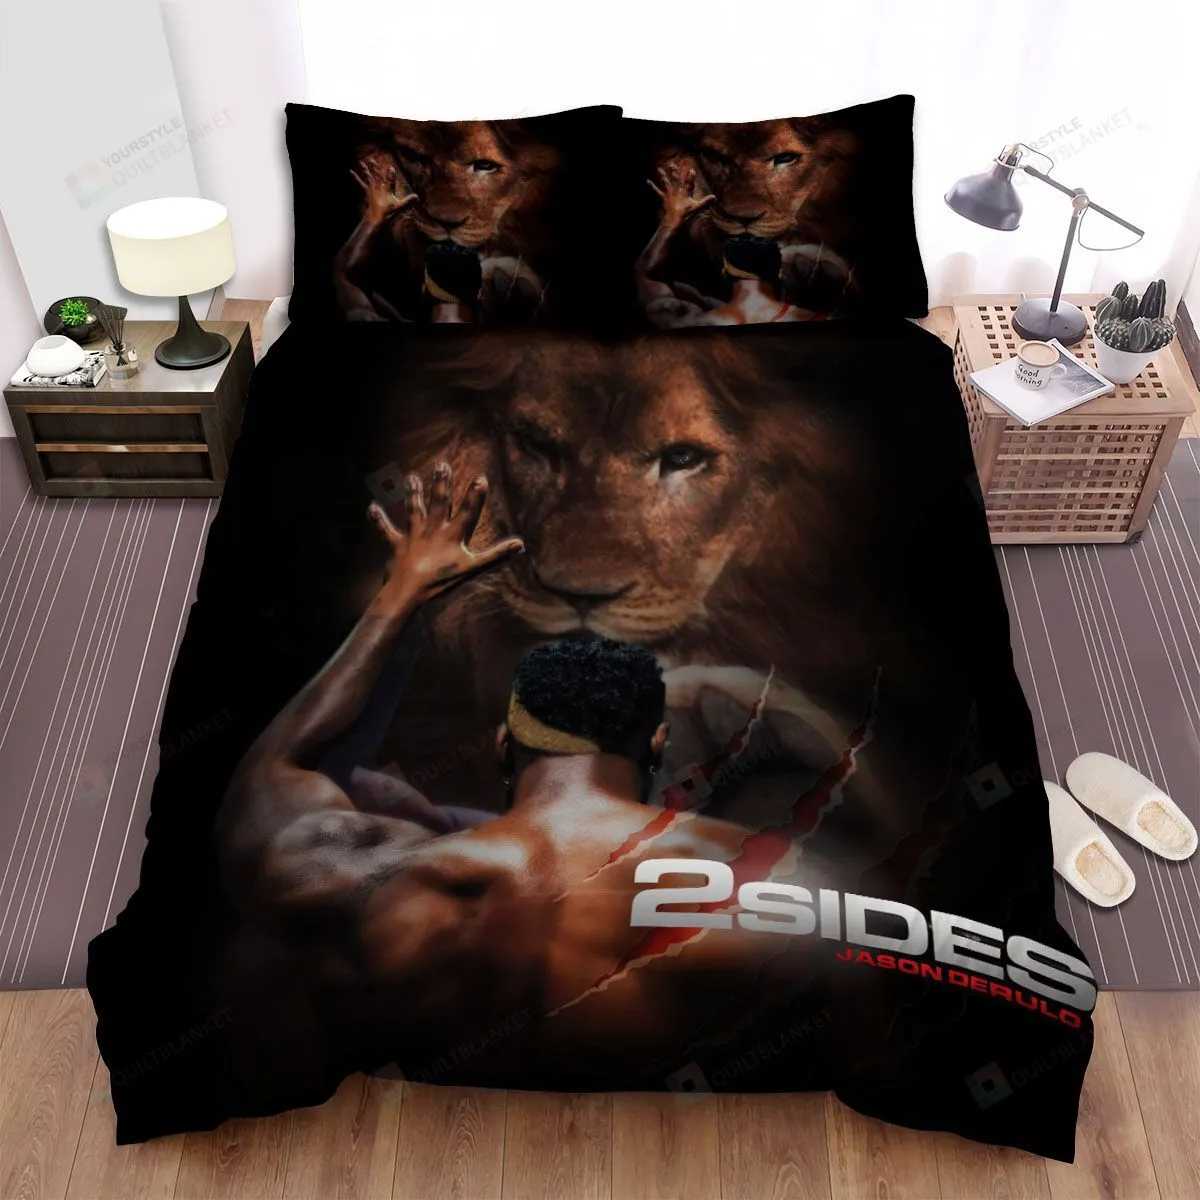 2 Sides 2 Jason Derulo Bed Sheets Spread Comforter Duvet Cover Bedding Sets